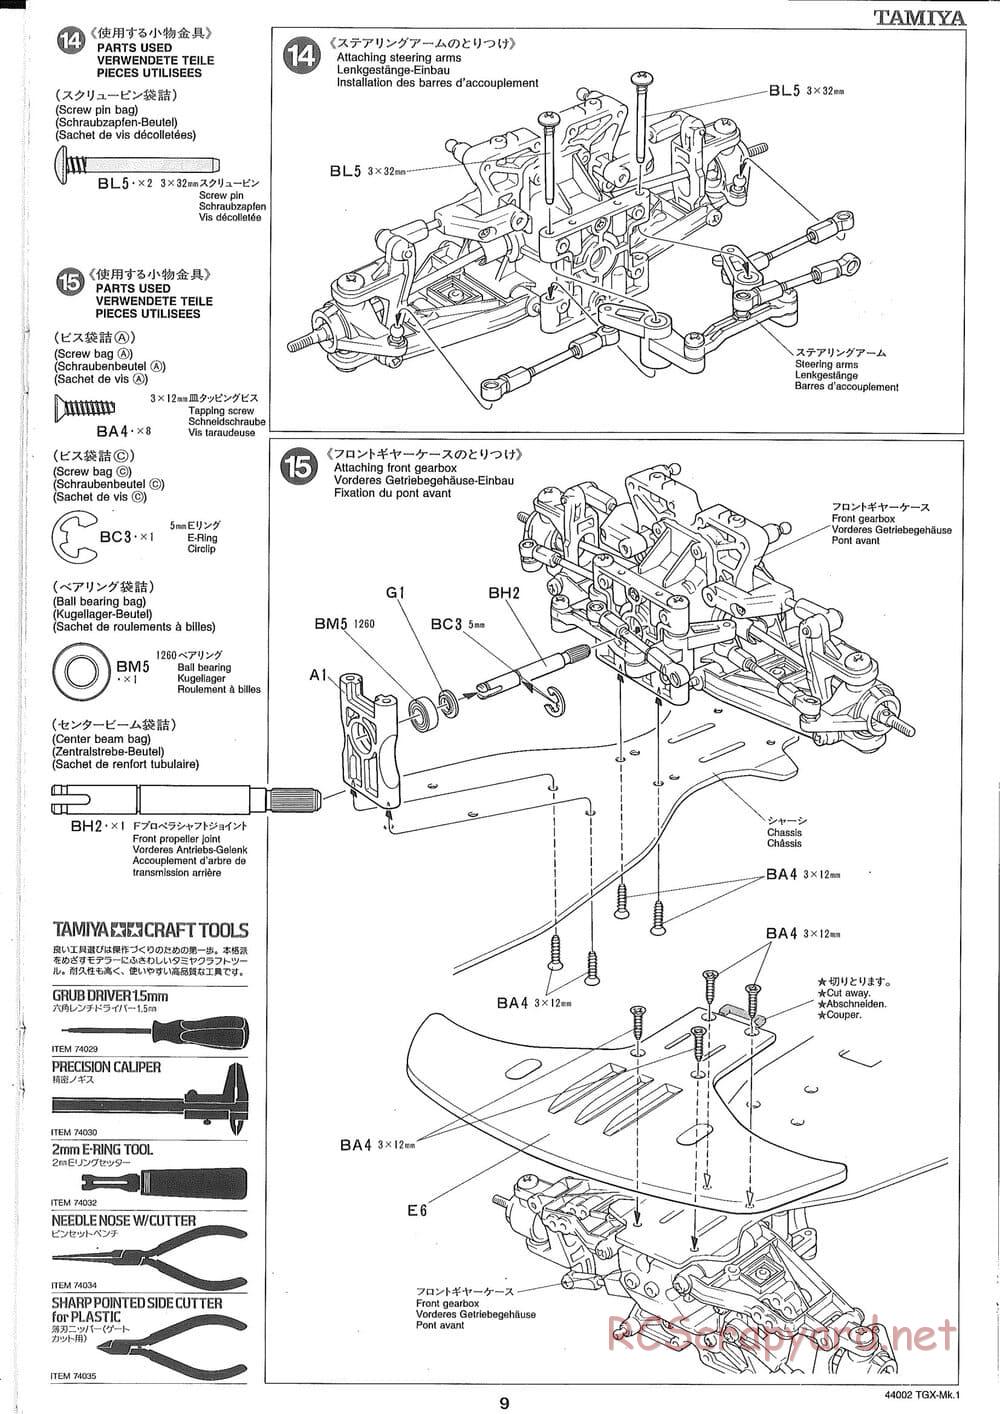 Tamiya - TGX Mk.1 TS Chassis Chassis - Manual - Page 9